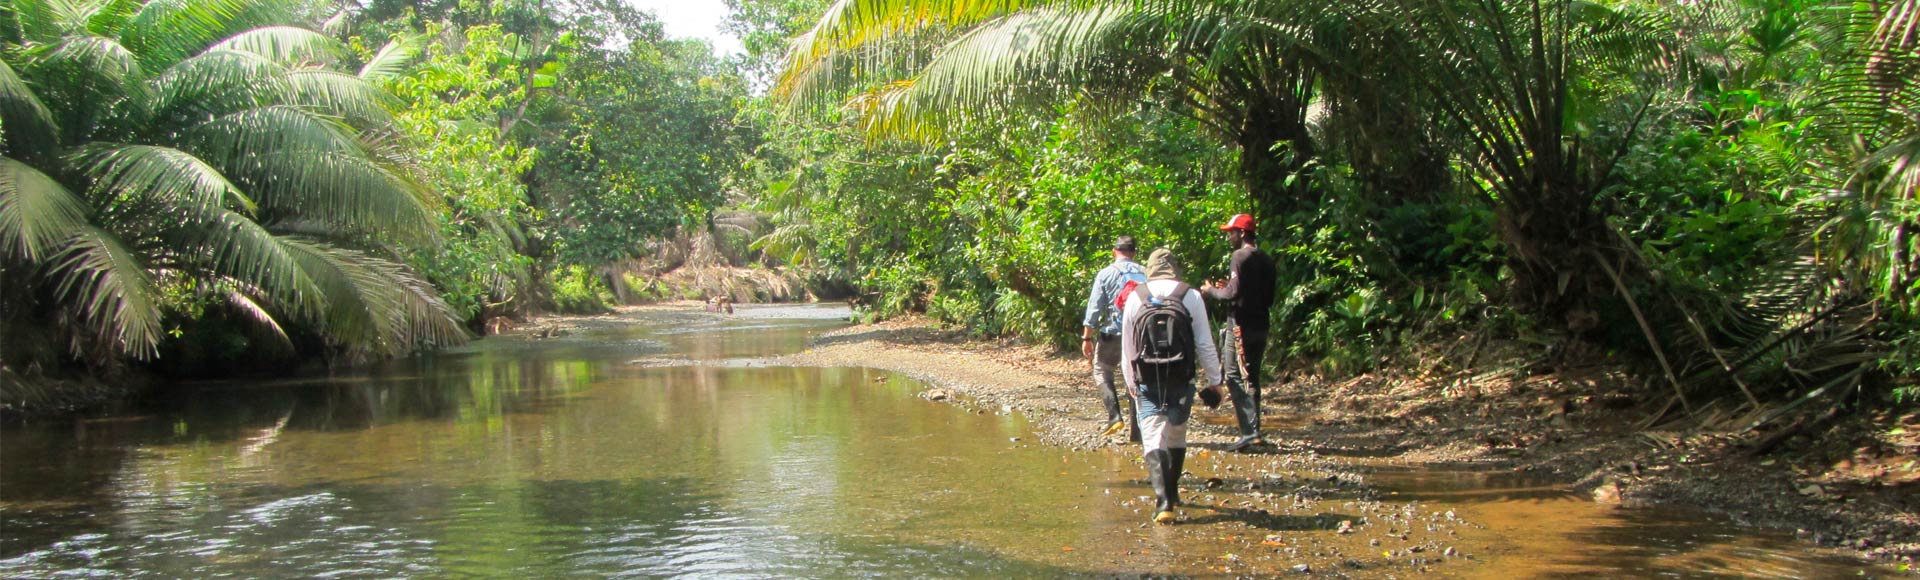 expedicion botanica colombia selvas choco ignacio solano